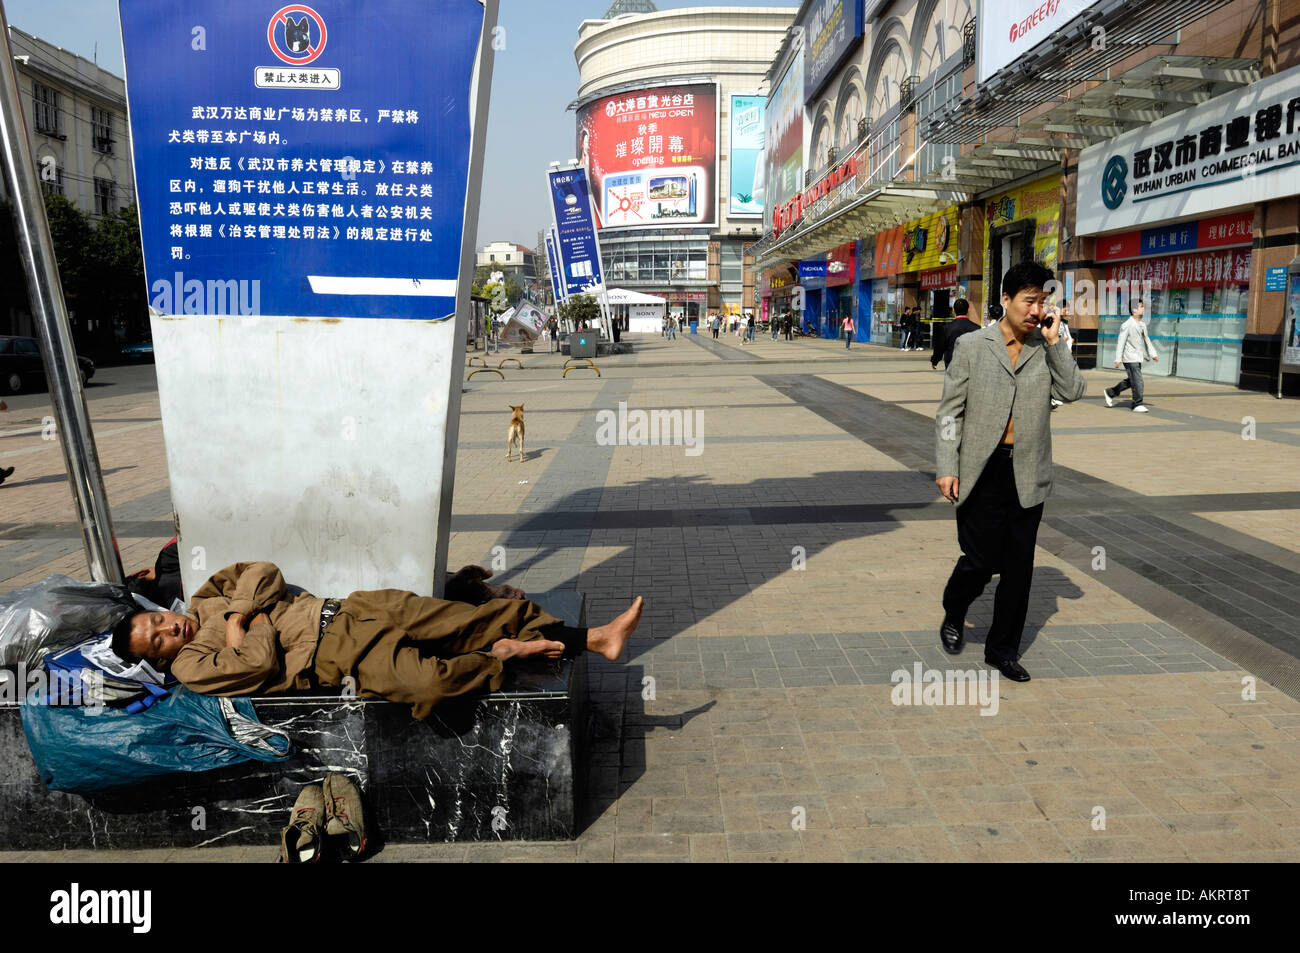 Un vagabond de dormir alors qu'un homme parlant avec téléphone cellulaire dans une rue commerciale de Wuhan Hubei Chine 21 Oct 2007 Banque D'Images